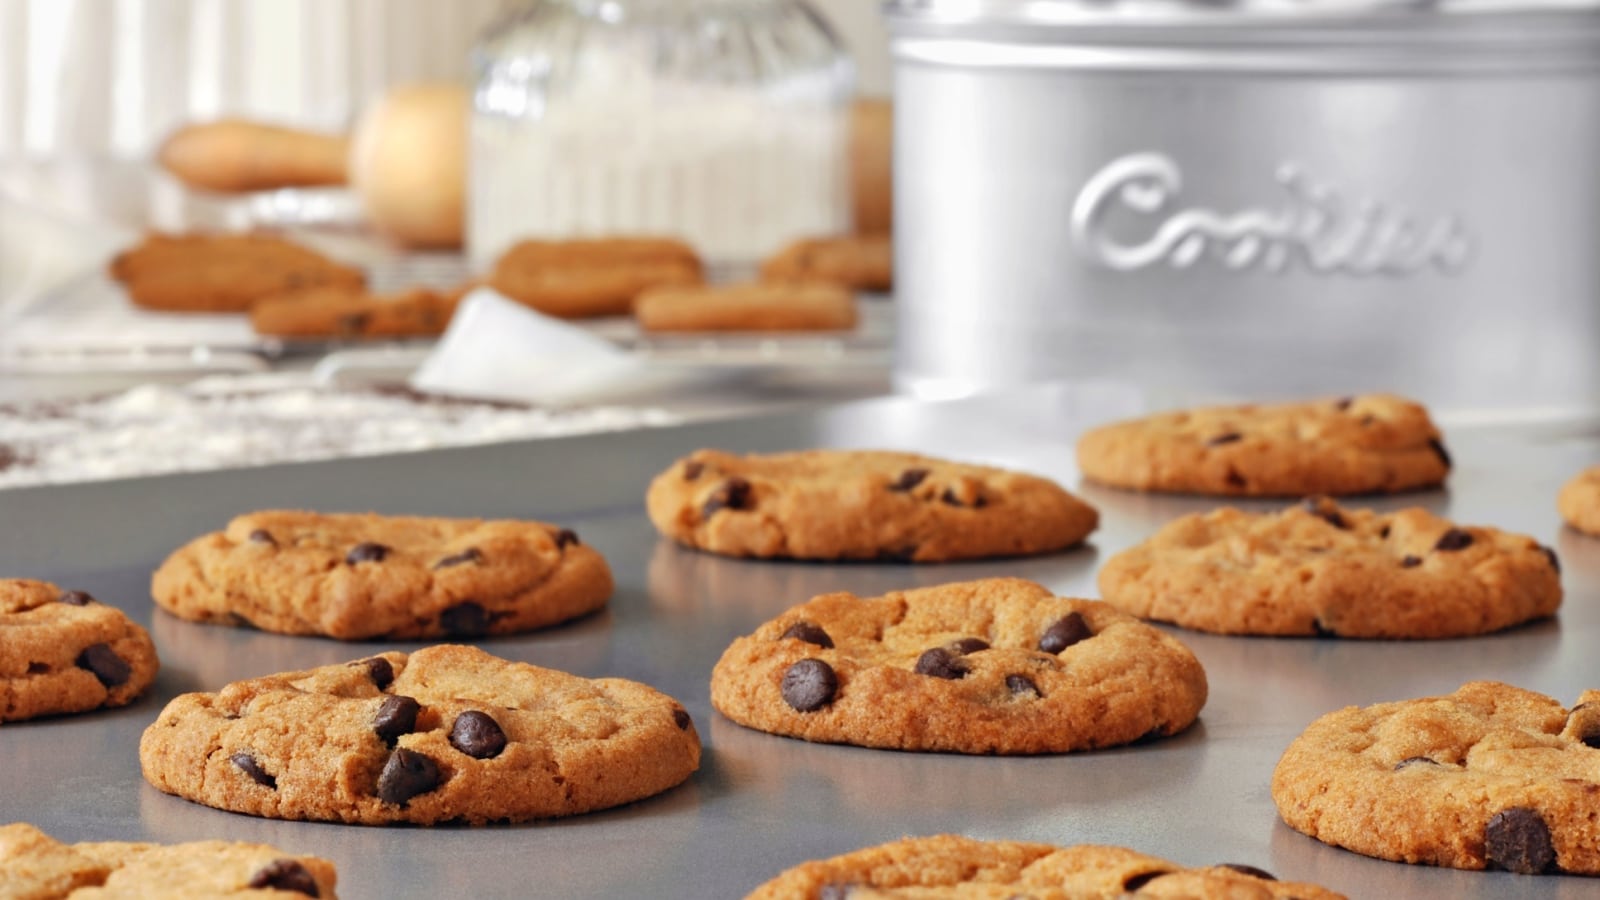 Cookies on pan. 